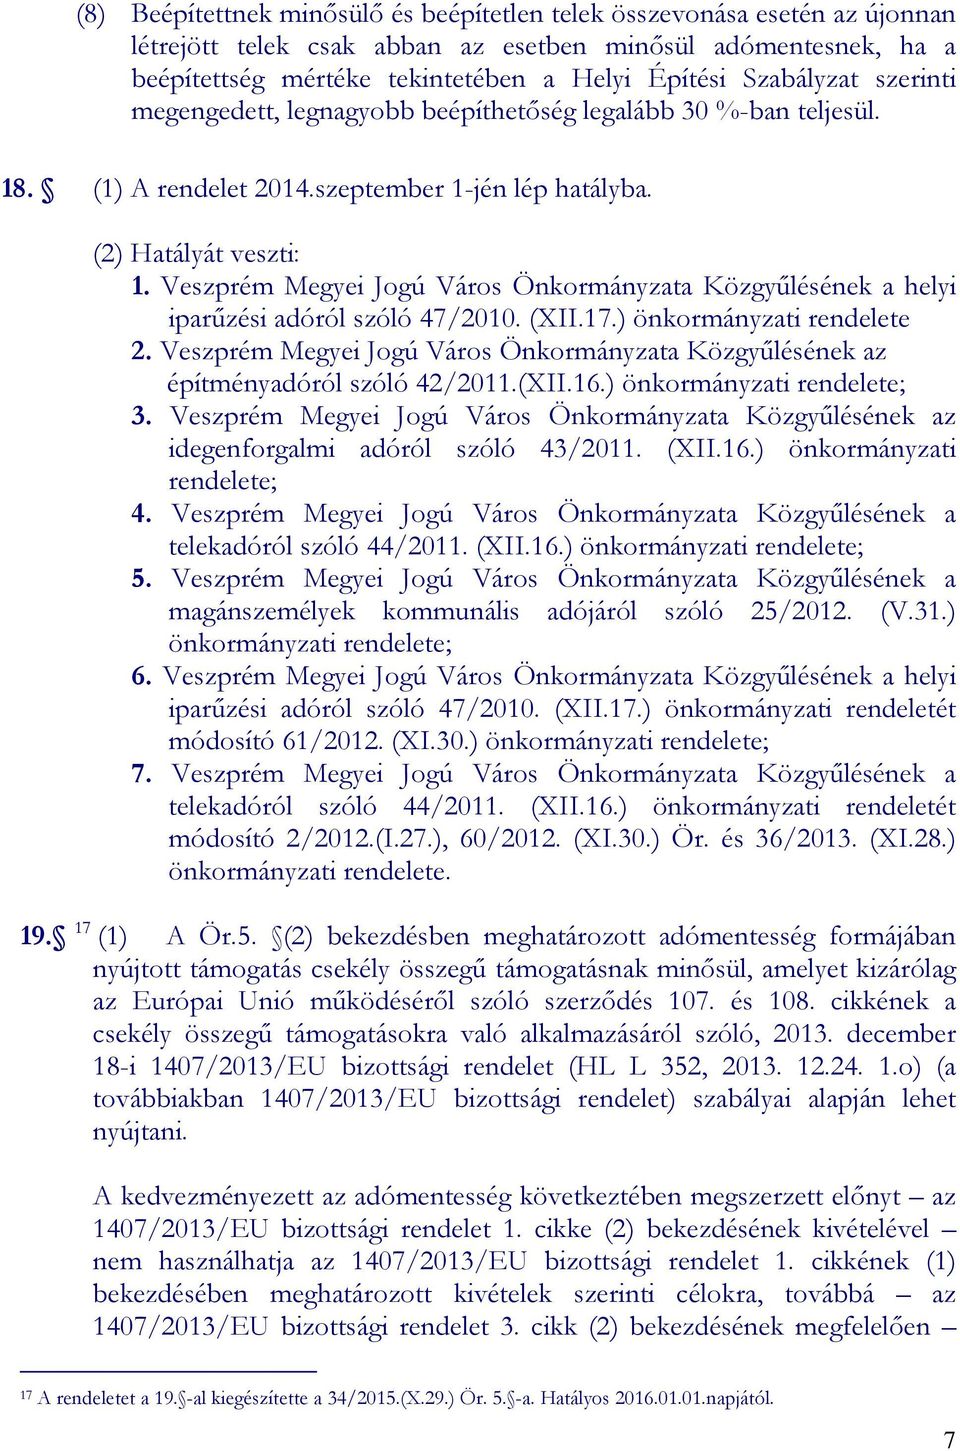 Veszprém Megyei Jogú Város Önkormányzata Közgyűlésének a helyi iparűzési adóról szóló 47/2010. (XII.17.) önkormányzati rendelete 2.